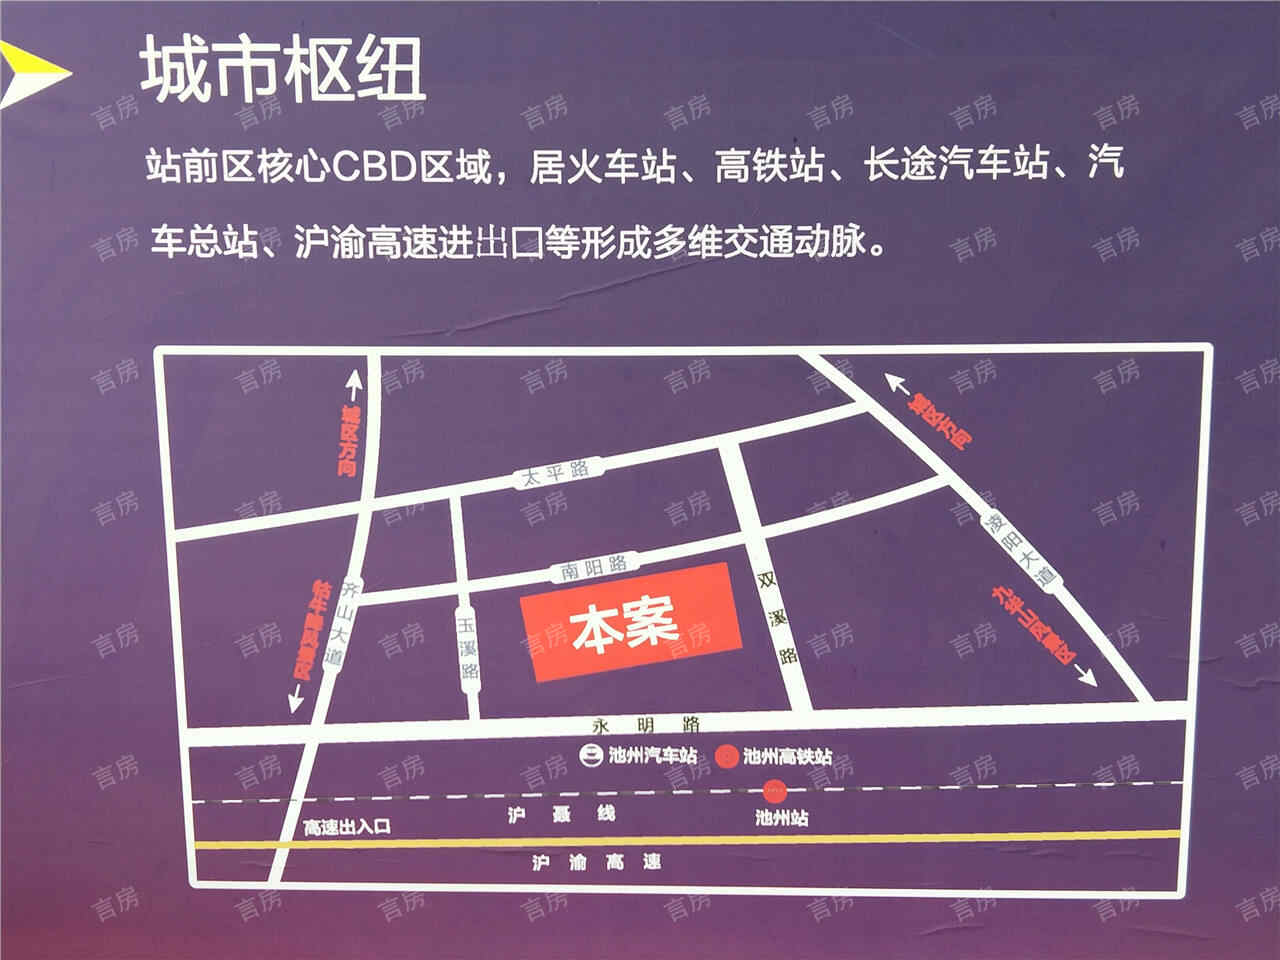 上海城二期位置图